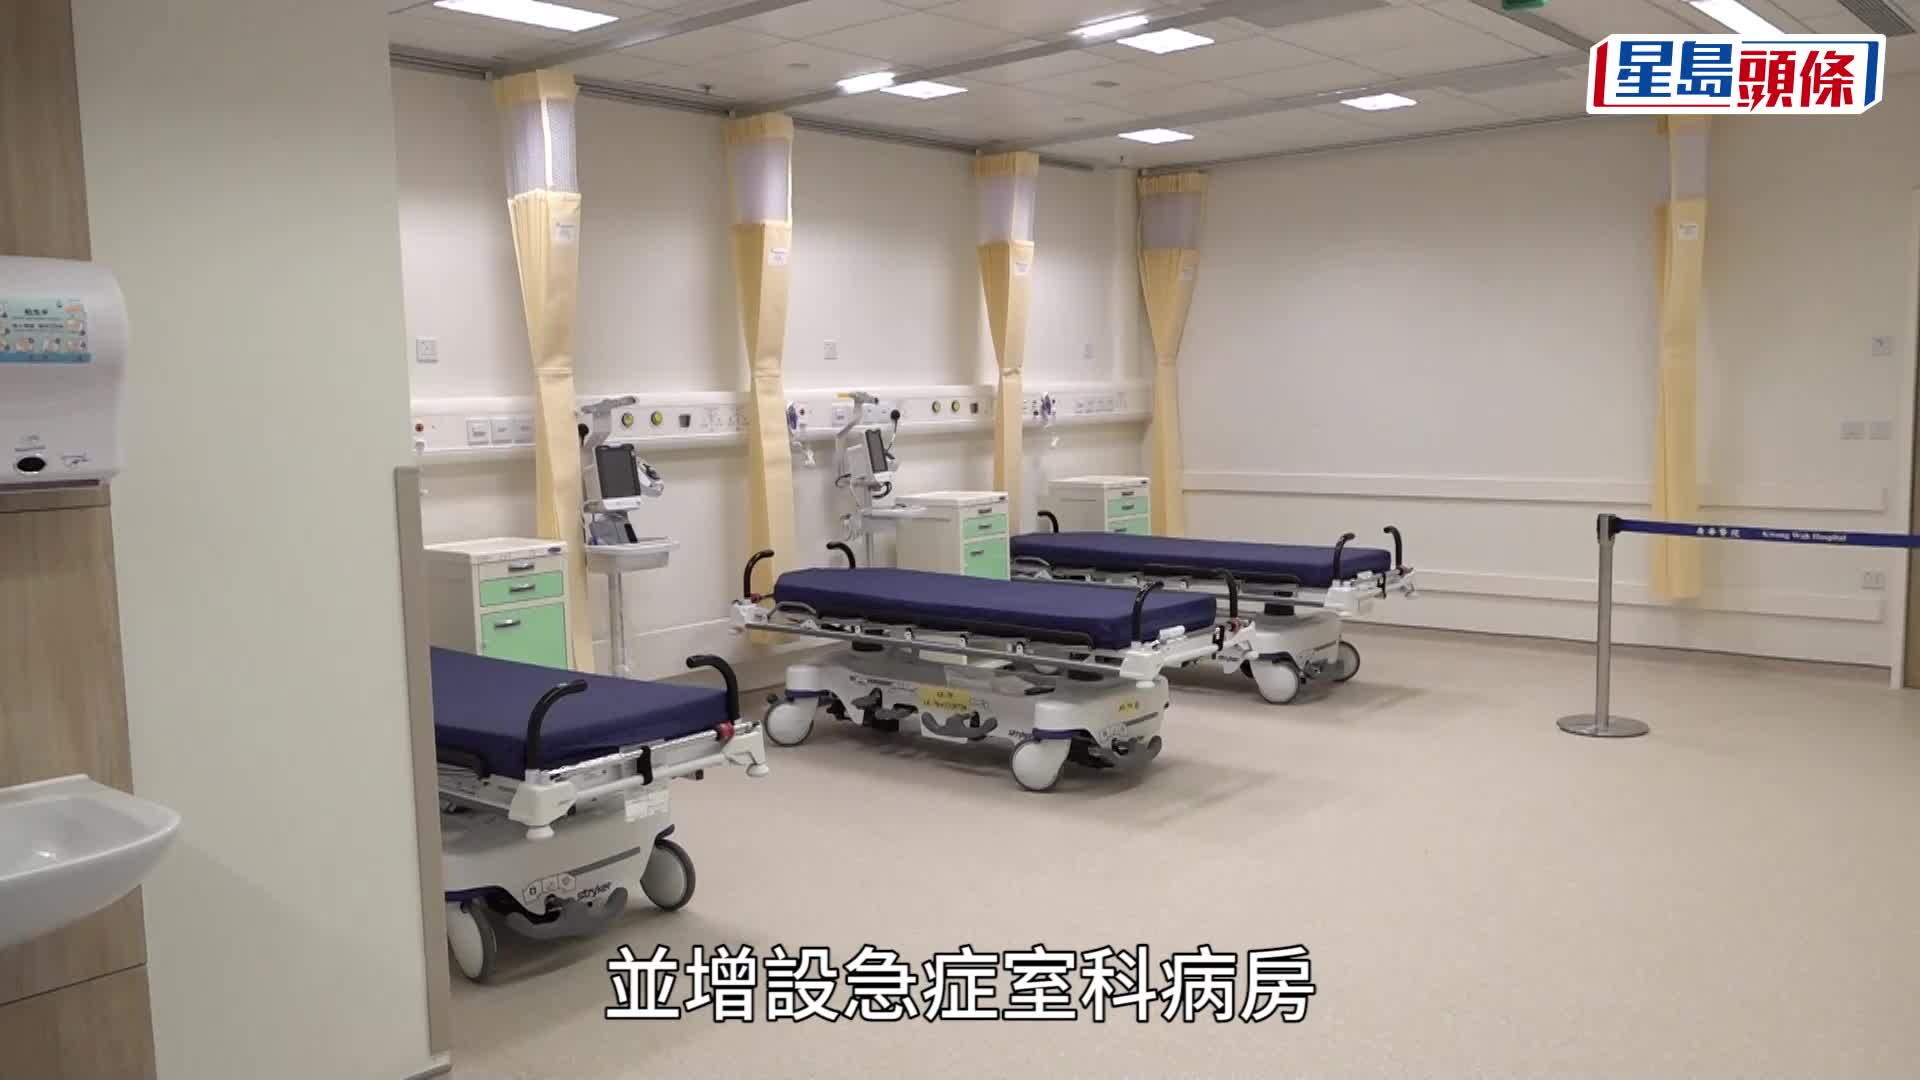 廣華醫院｜新急症室5.31啟用 病人讚簇新環境感覺良好